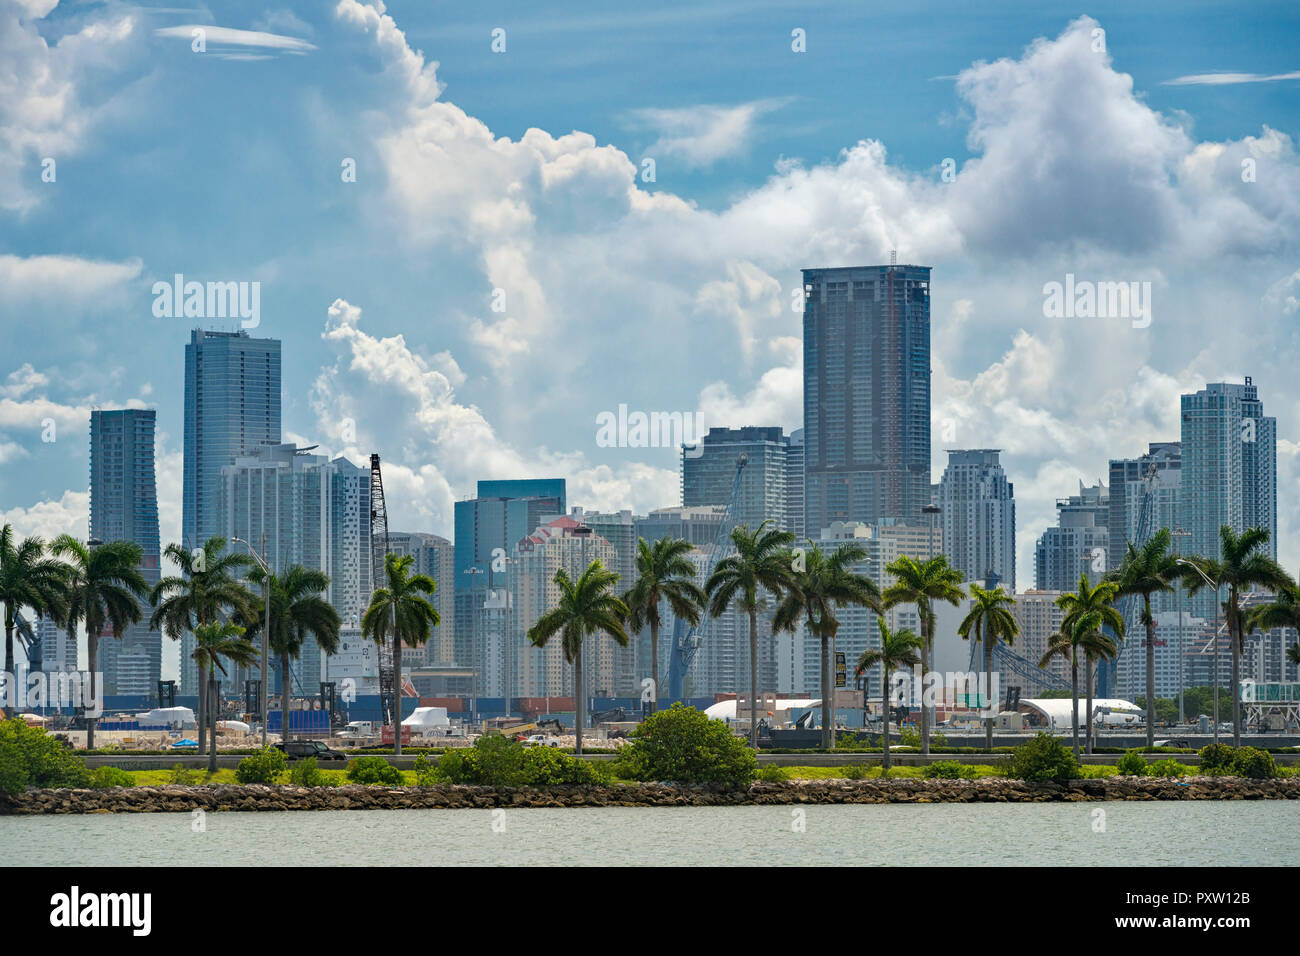 États-unis d'Amérique, Floride, Miami, le centre-ville, avec des tours en centre-ville de Miami et de palmiers avec des nuages au-dessus Banque D'Images